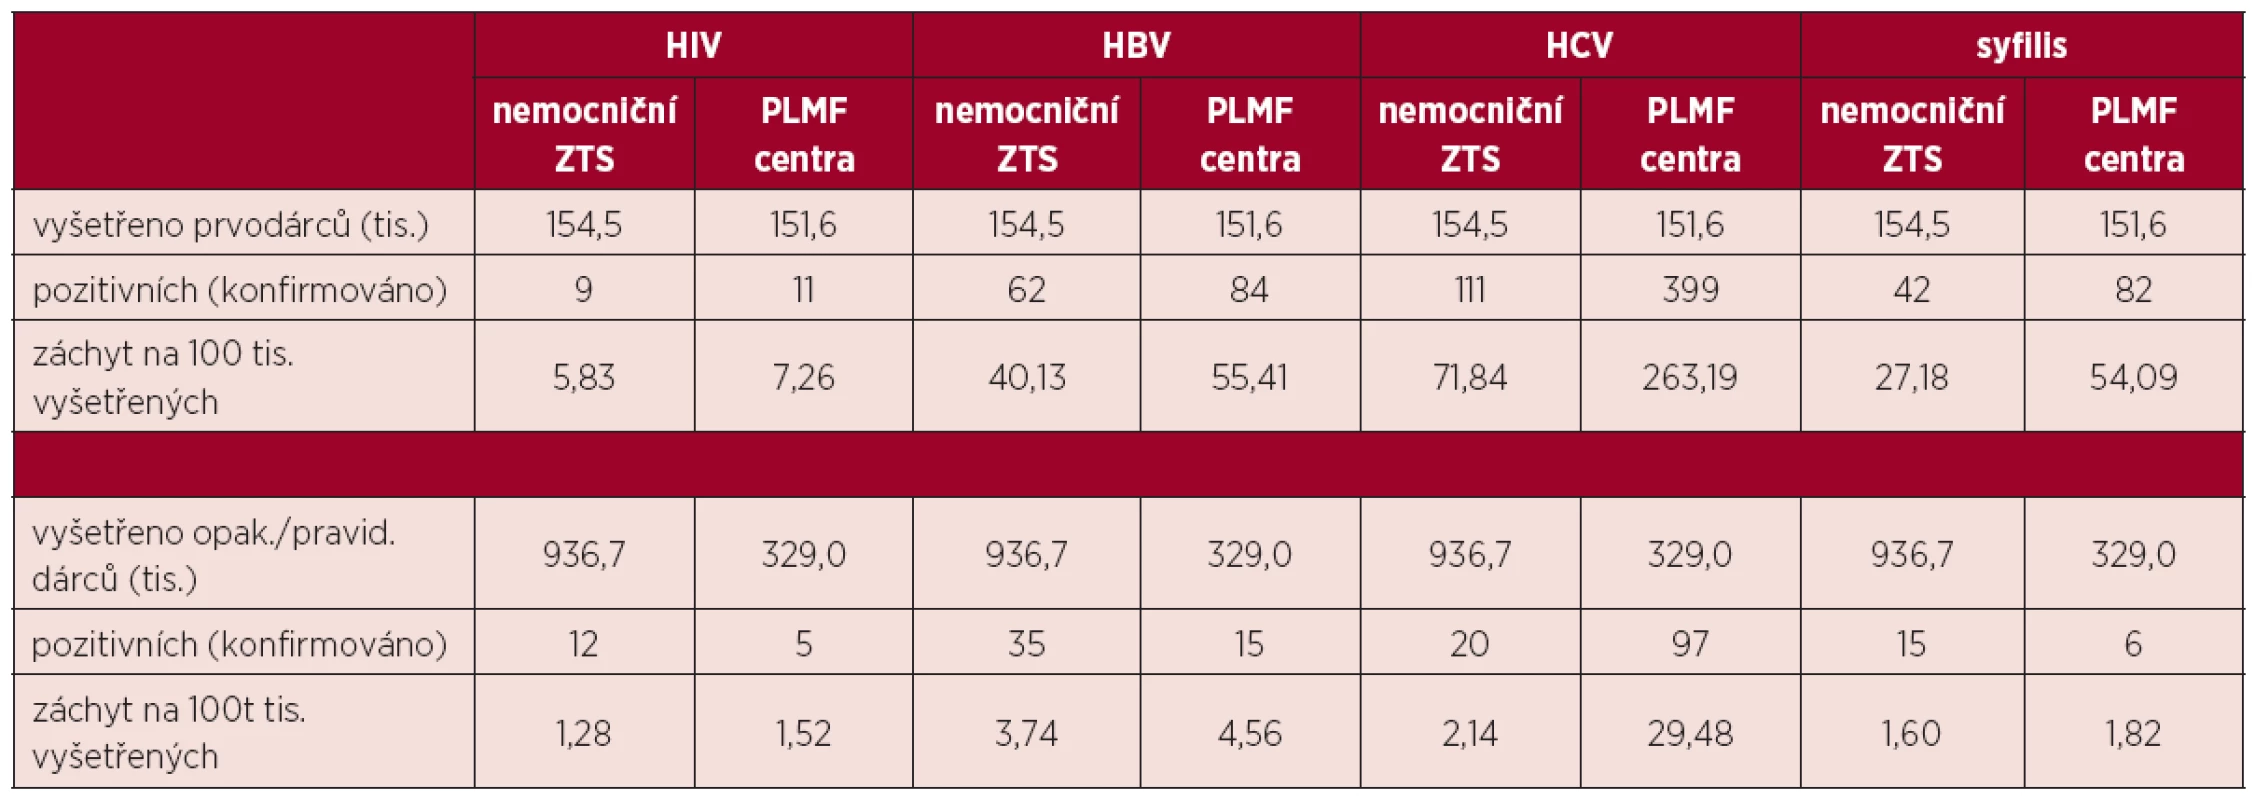 Záchyt infekčních markerů u dárců nemocničních ZTS a plazmaferetických center za r. 2009-2013.